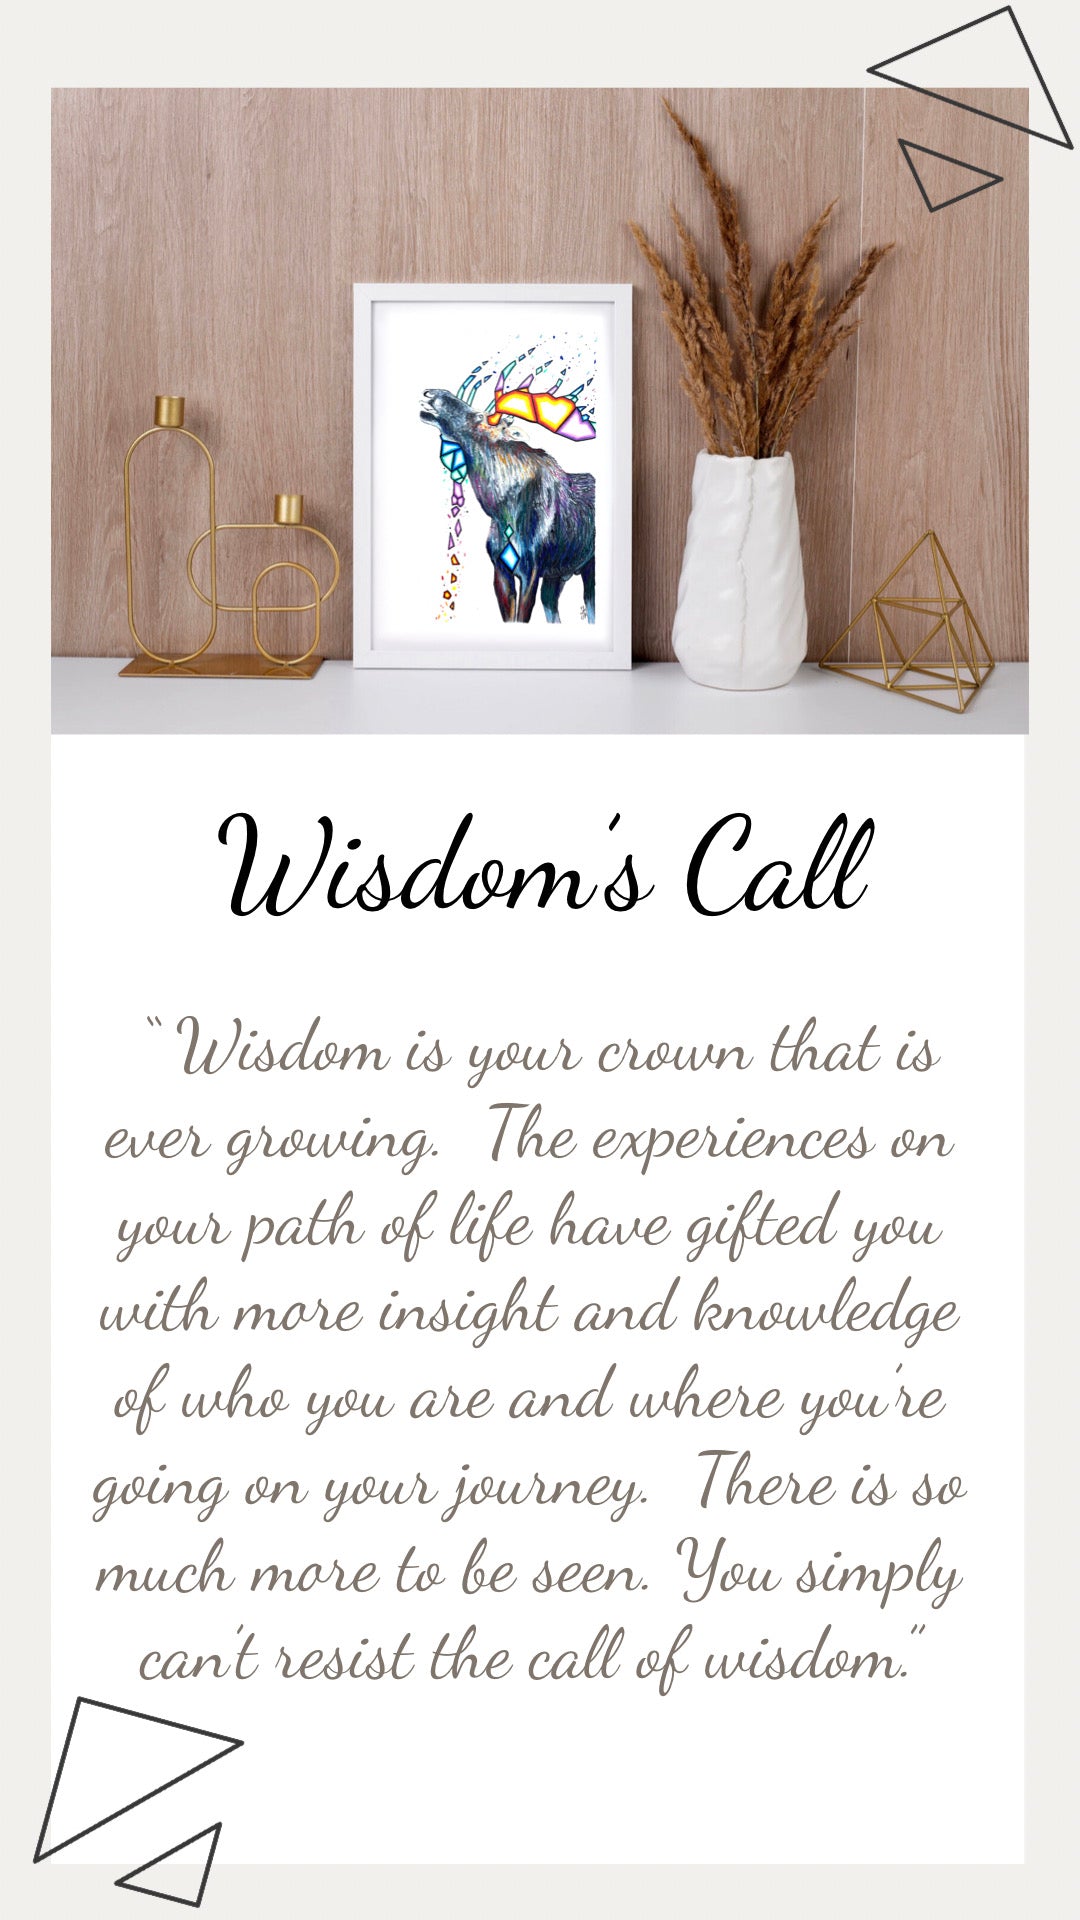 Wisdom’s Call